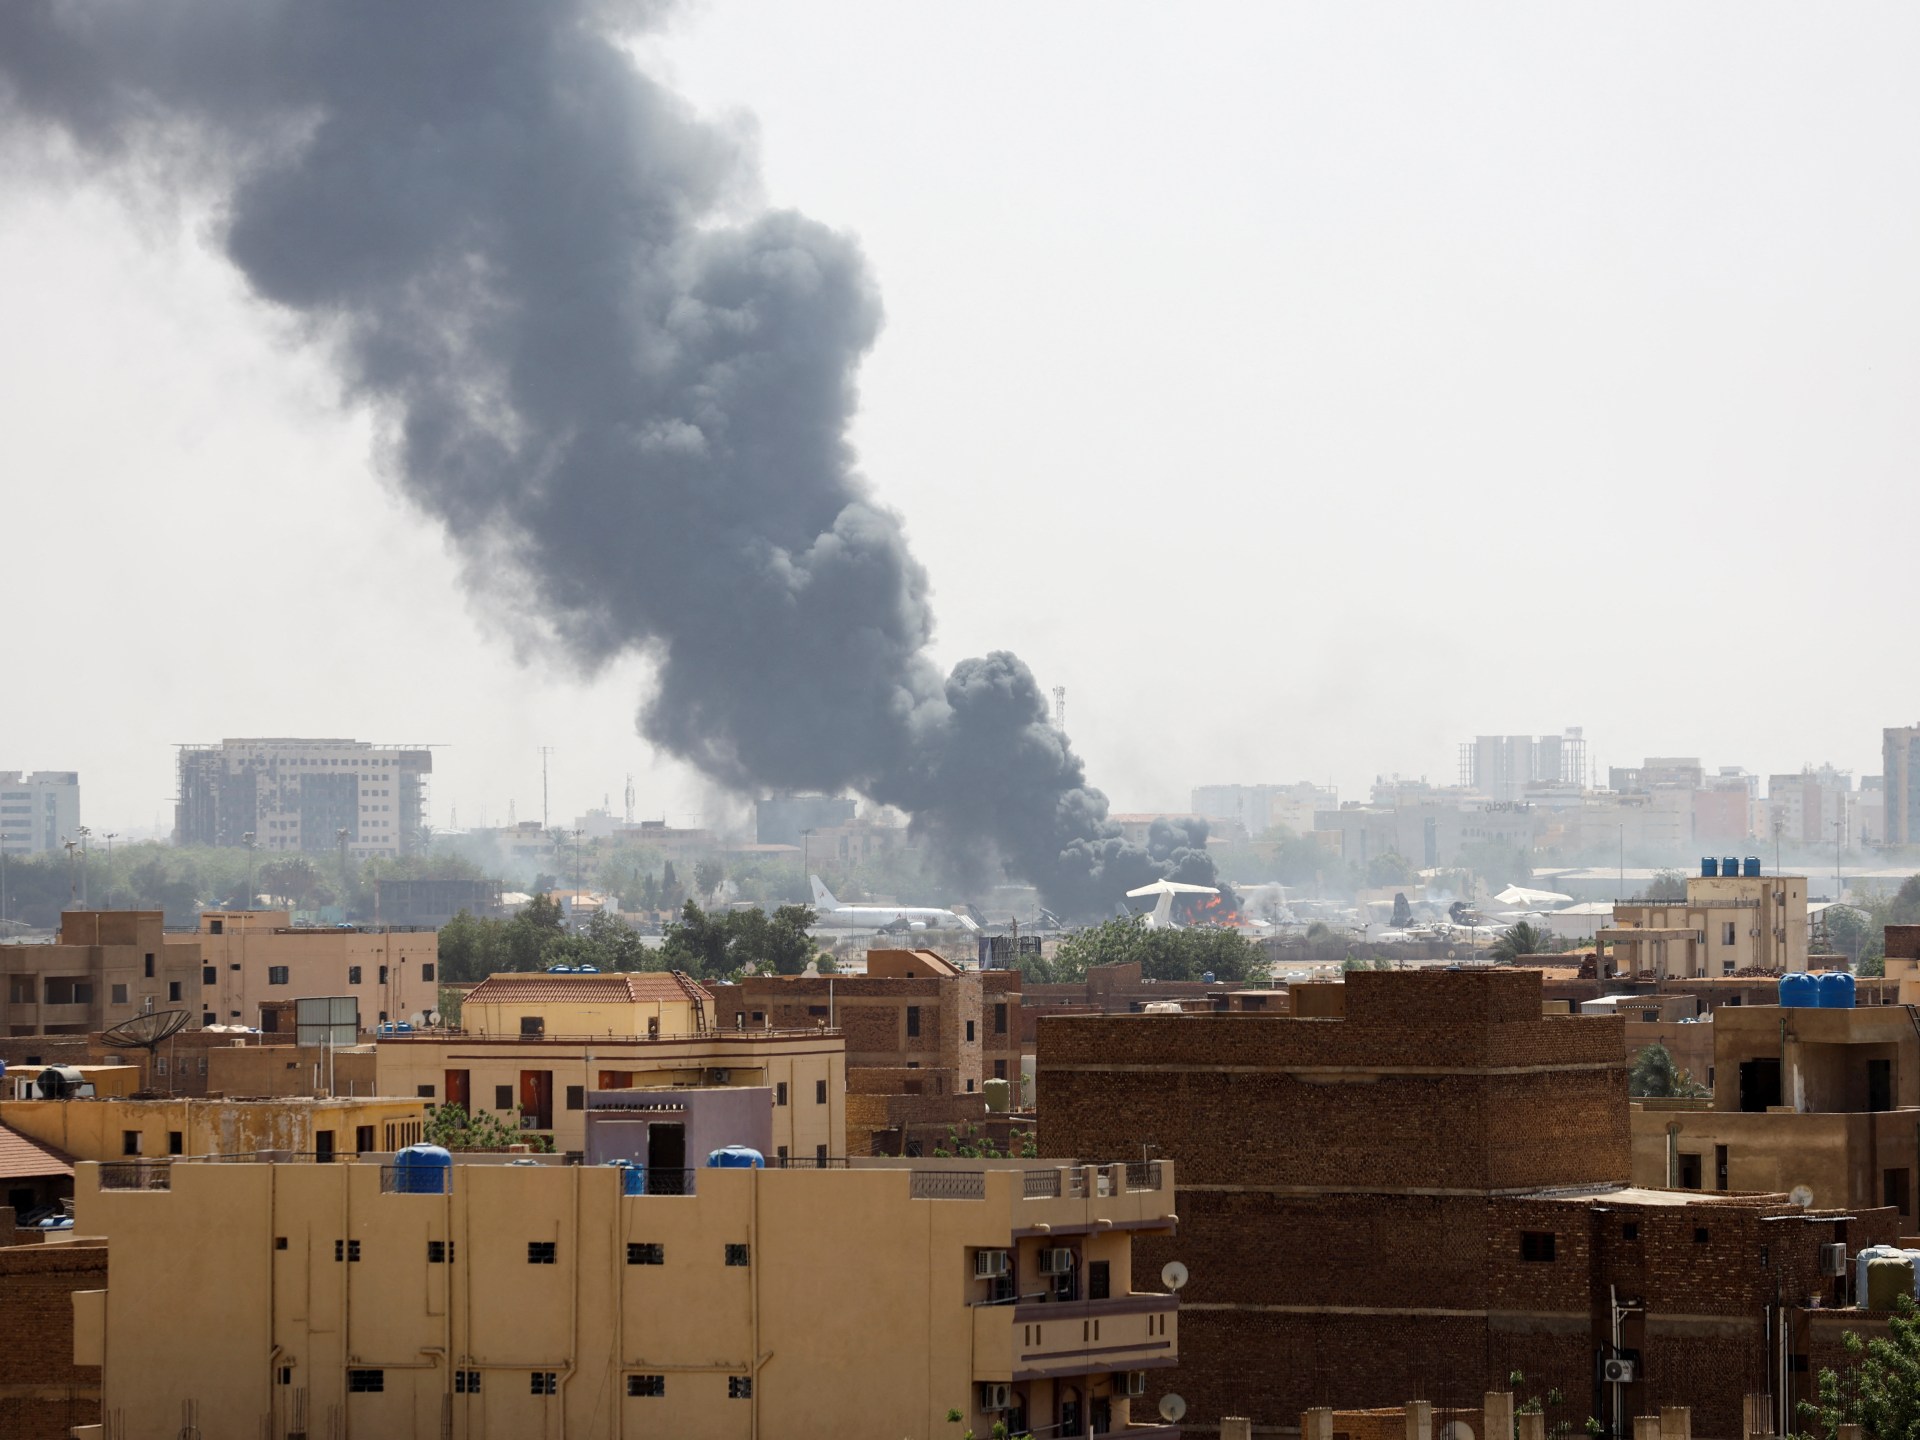 Posting online di Sudan menunjukkan warga sipil yang terjebak, dokter putus asa |  Berita Militer